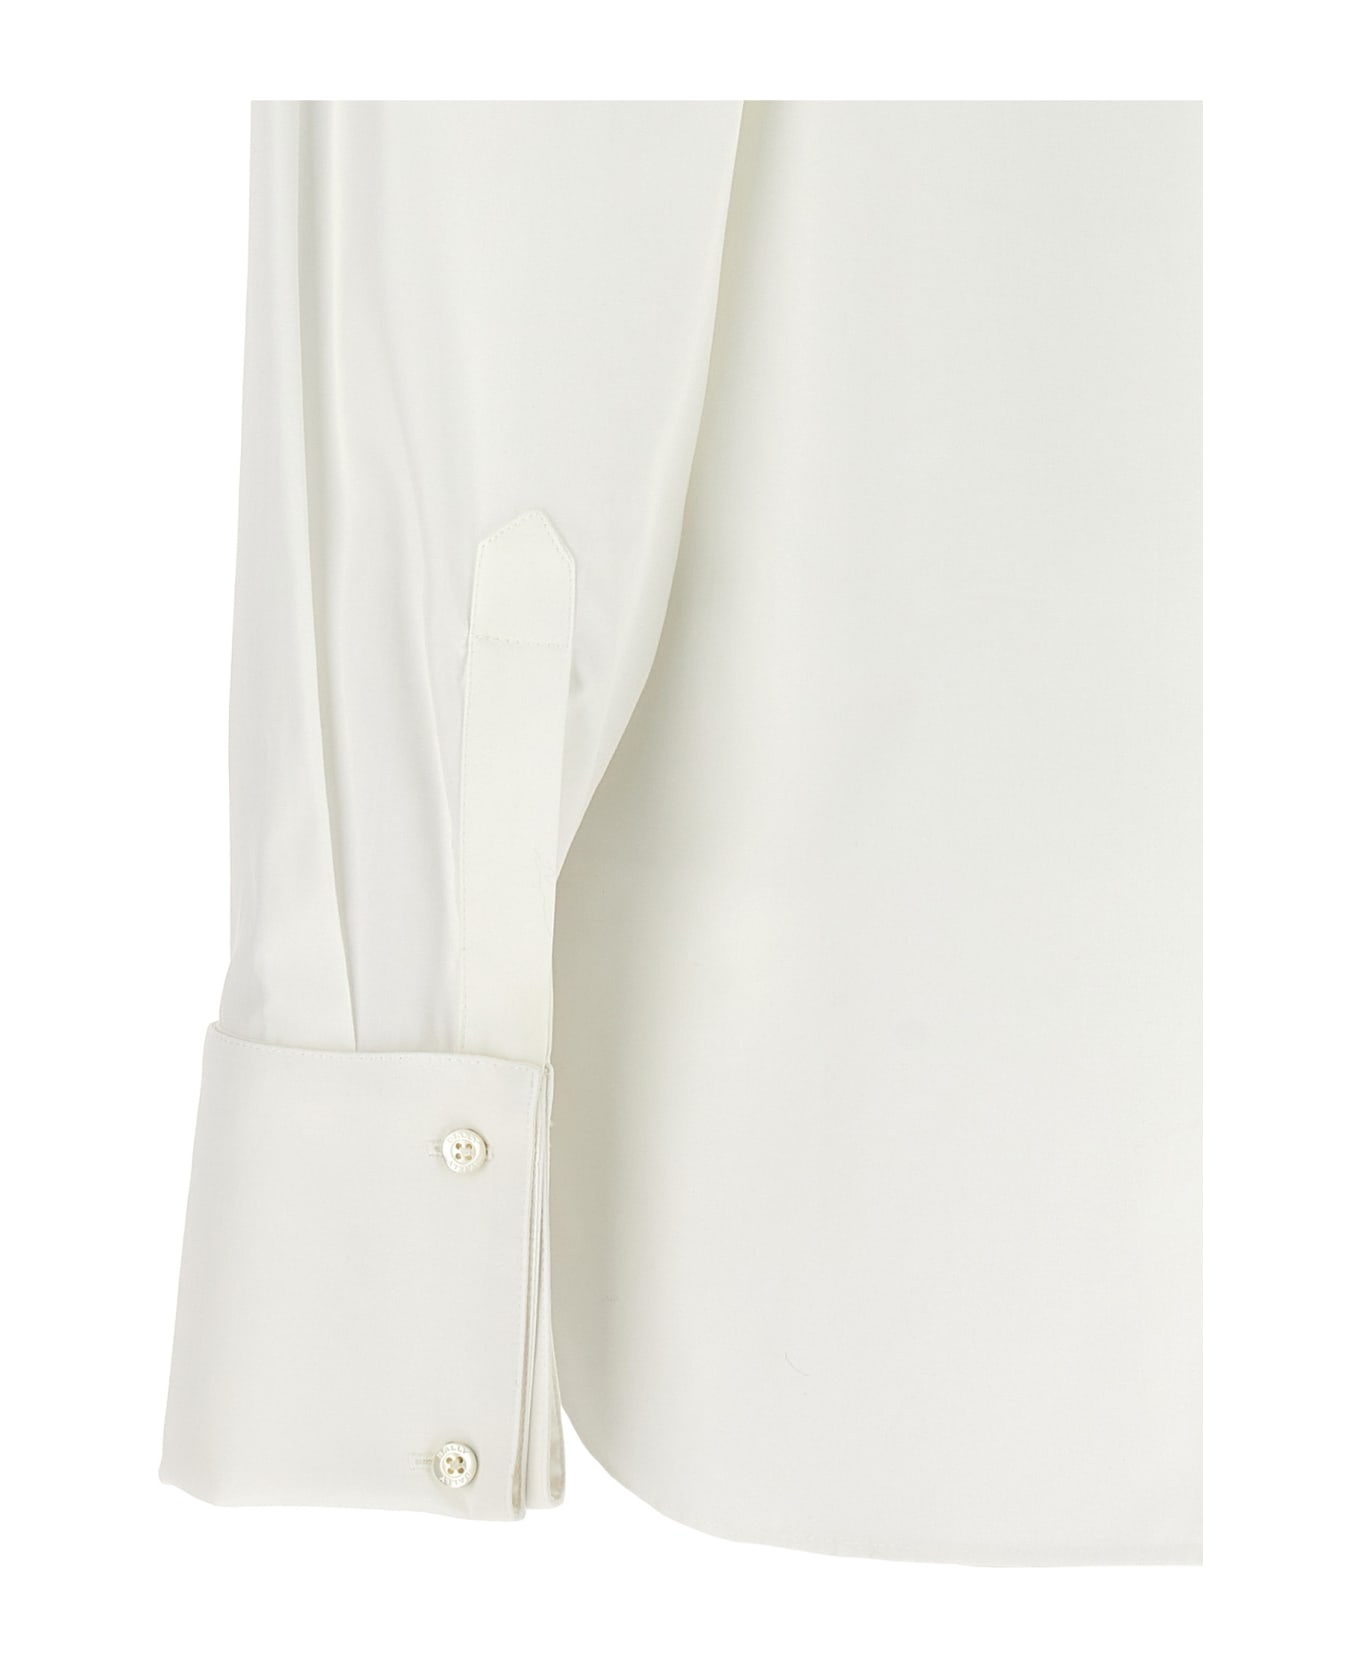 Bally Plastron Shirt - White